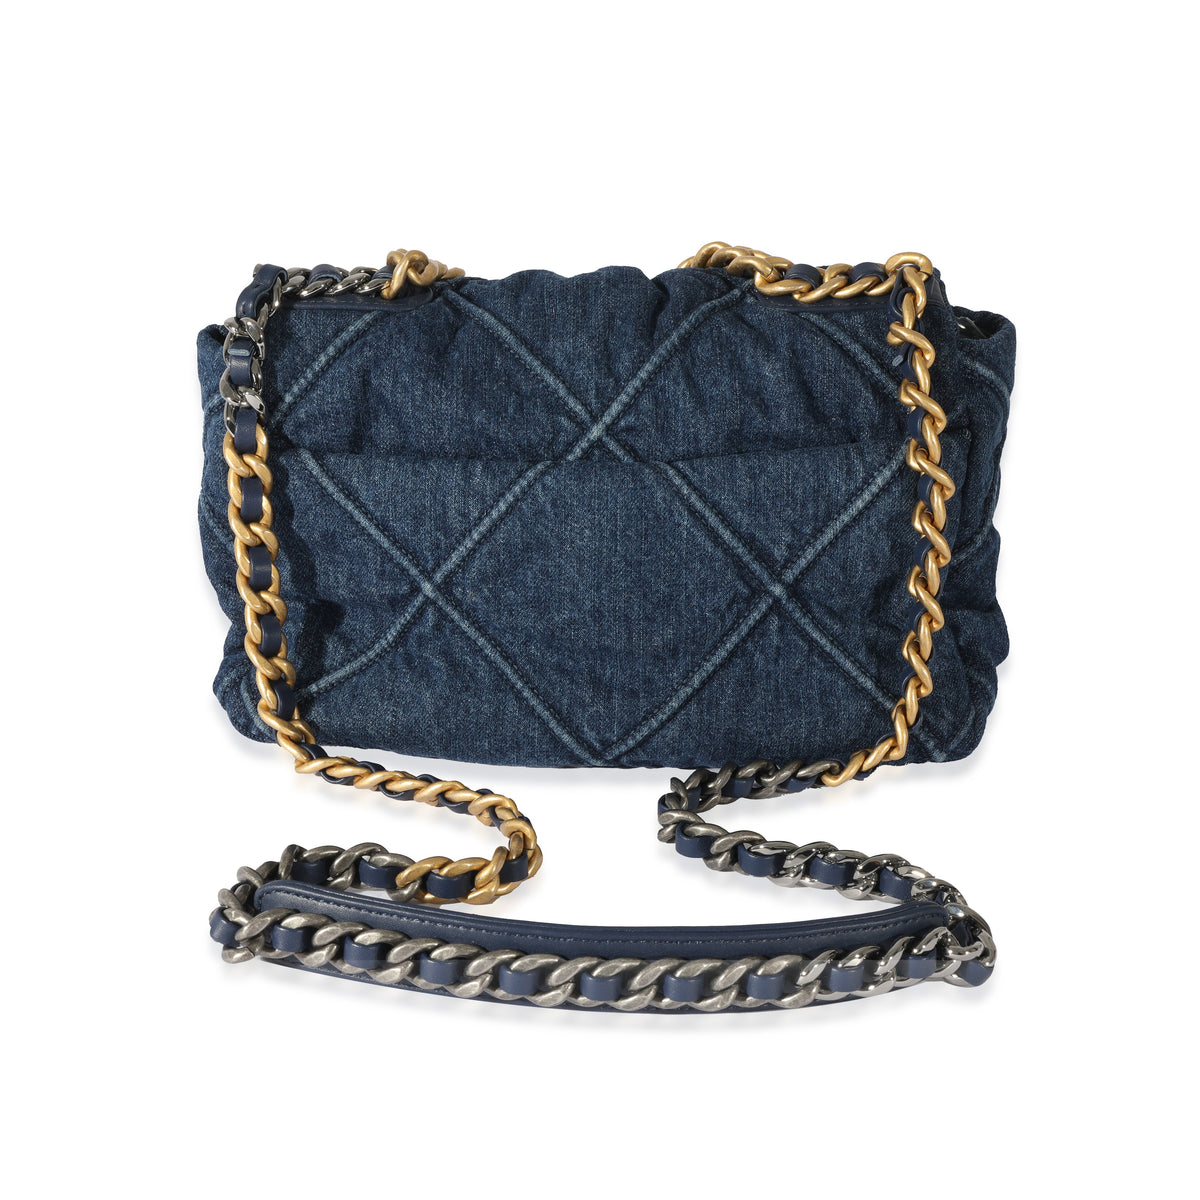 Chanel Blue Quilted Denim Medium Chanel 19 Flap Bag, myGemma, QA